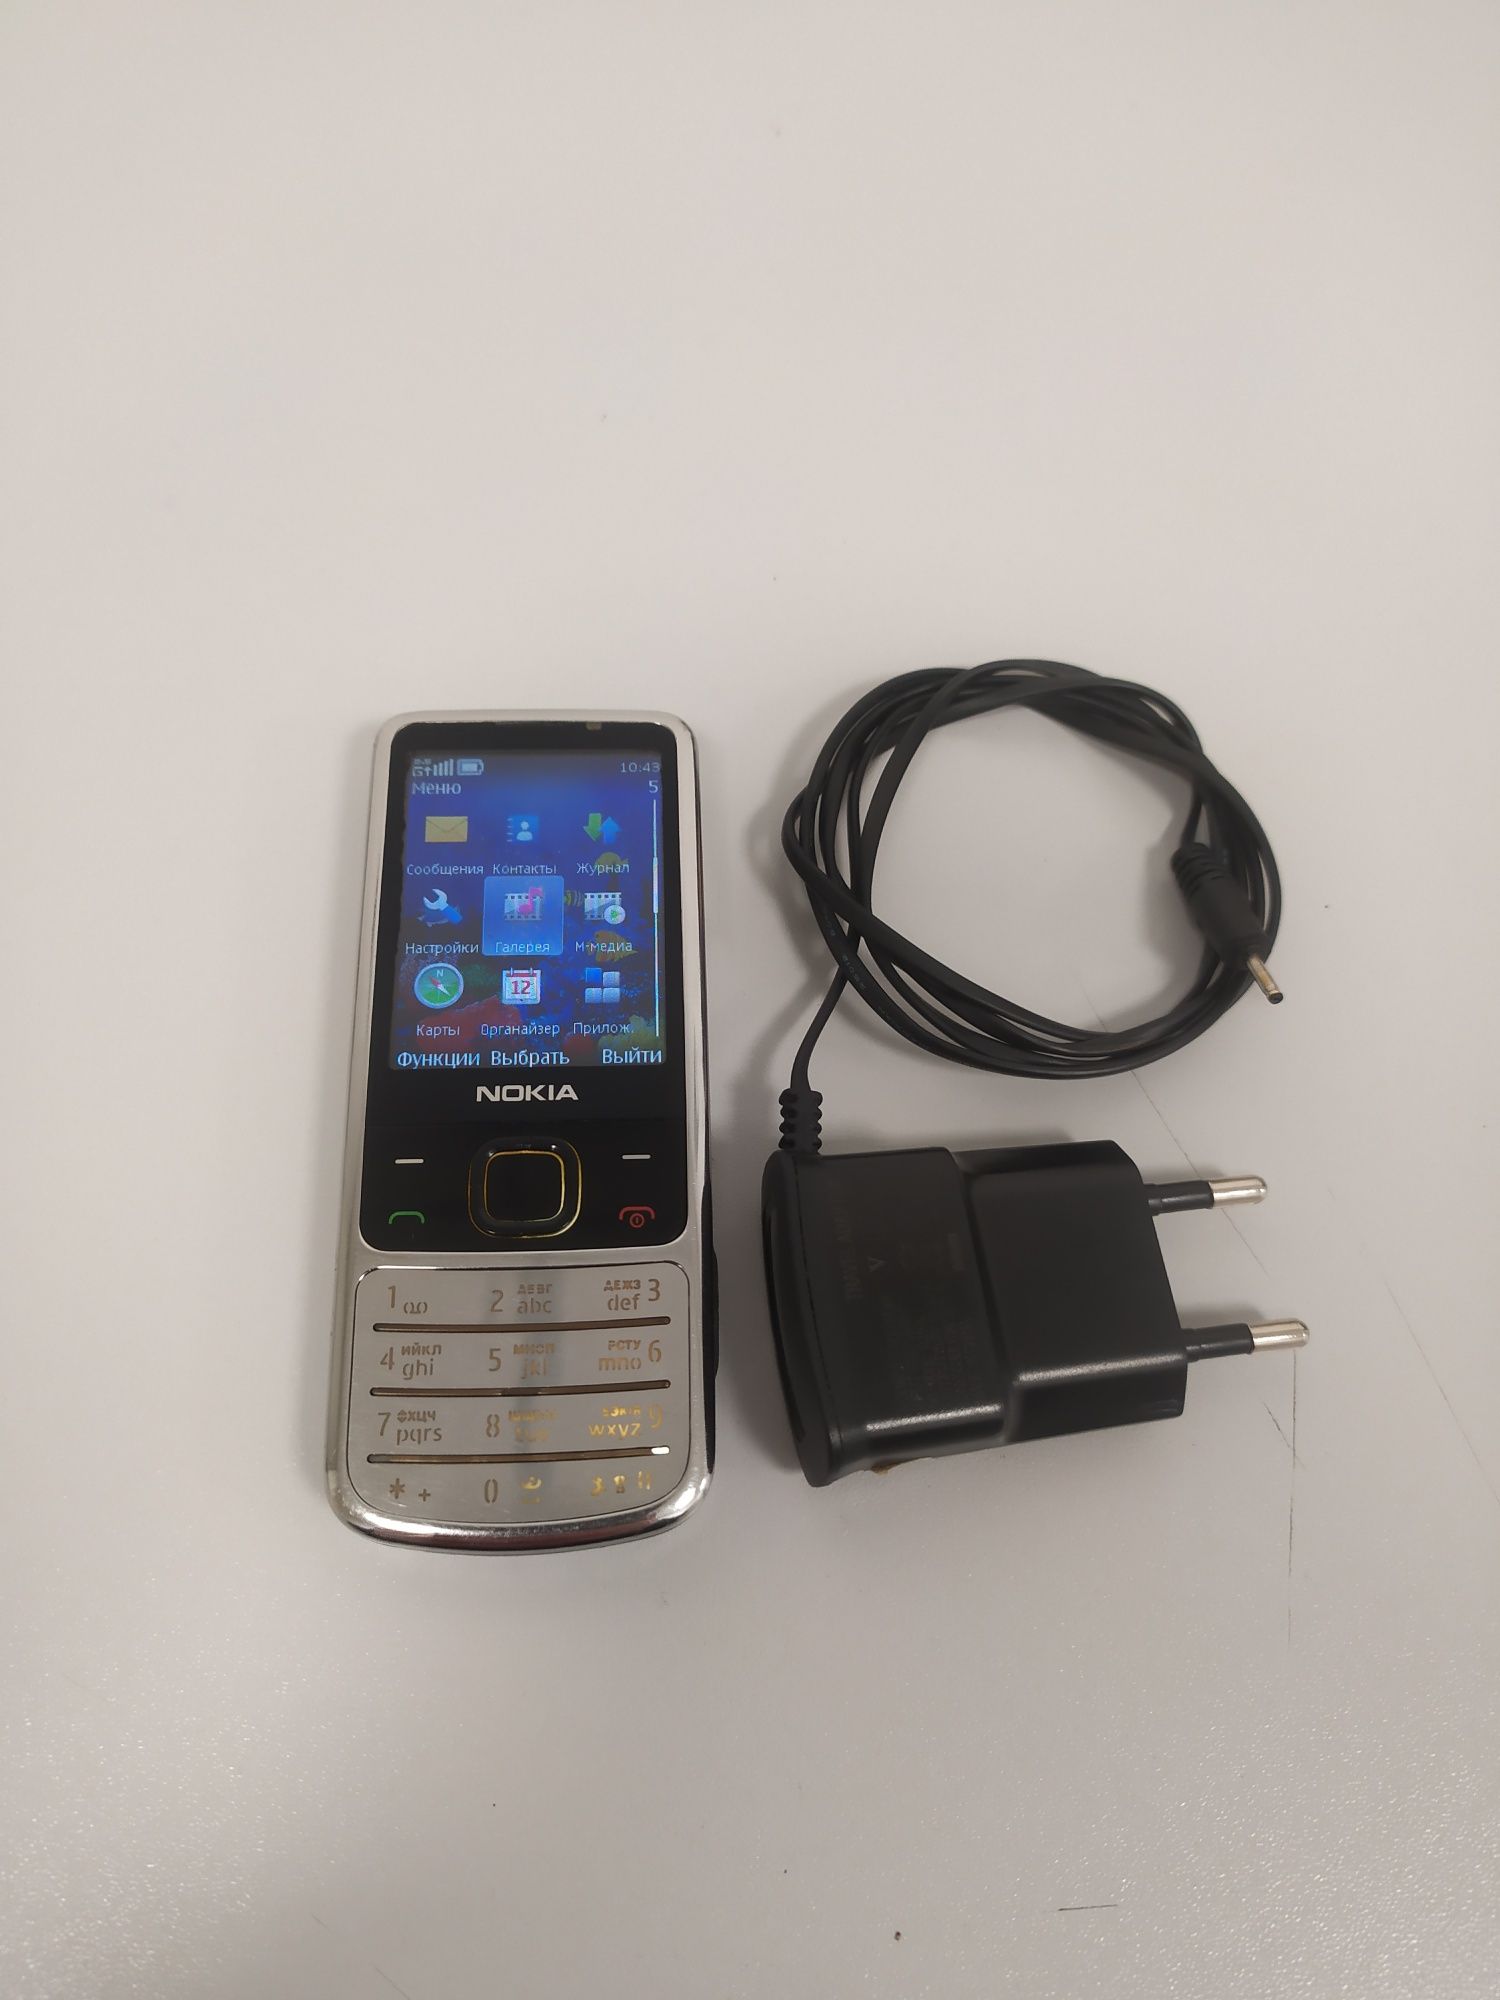 Продам орігінальний мобільний телефон Nokia - 6700. Classic.